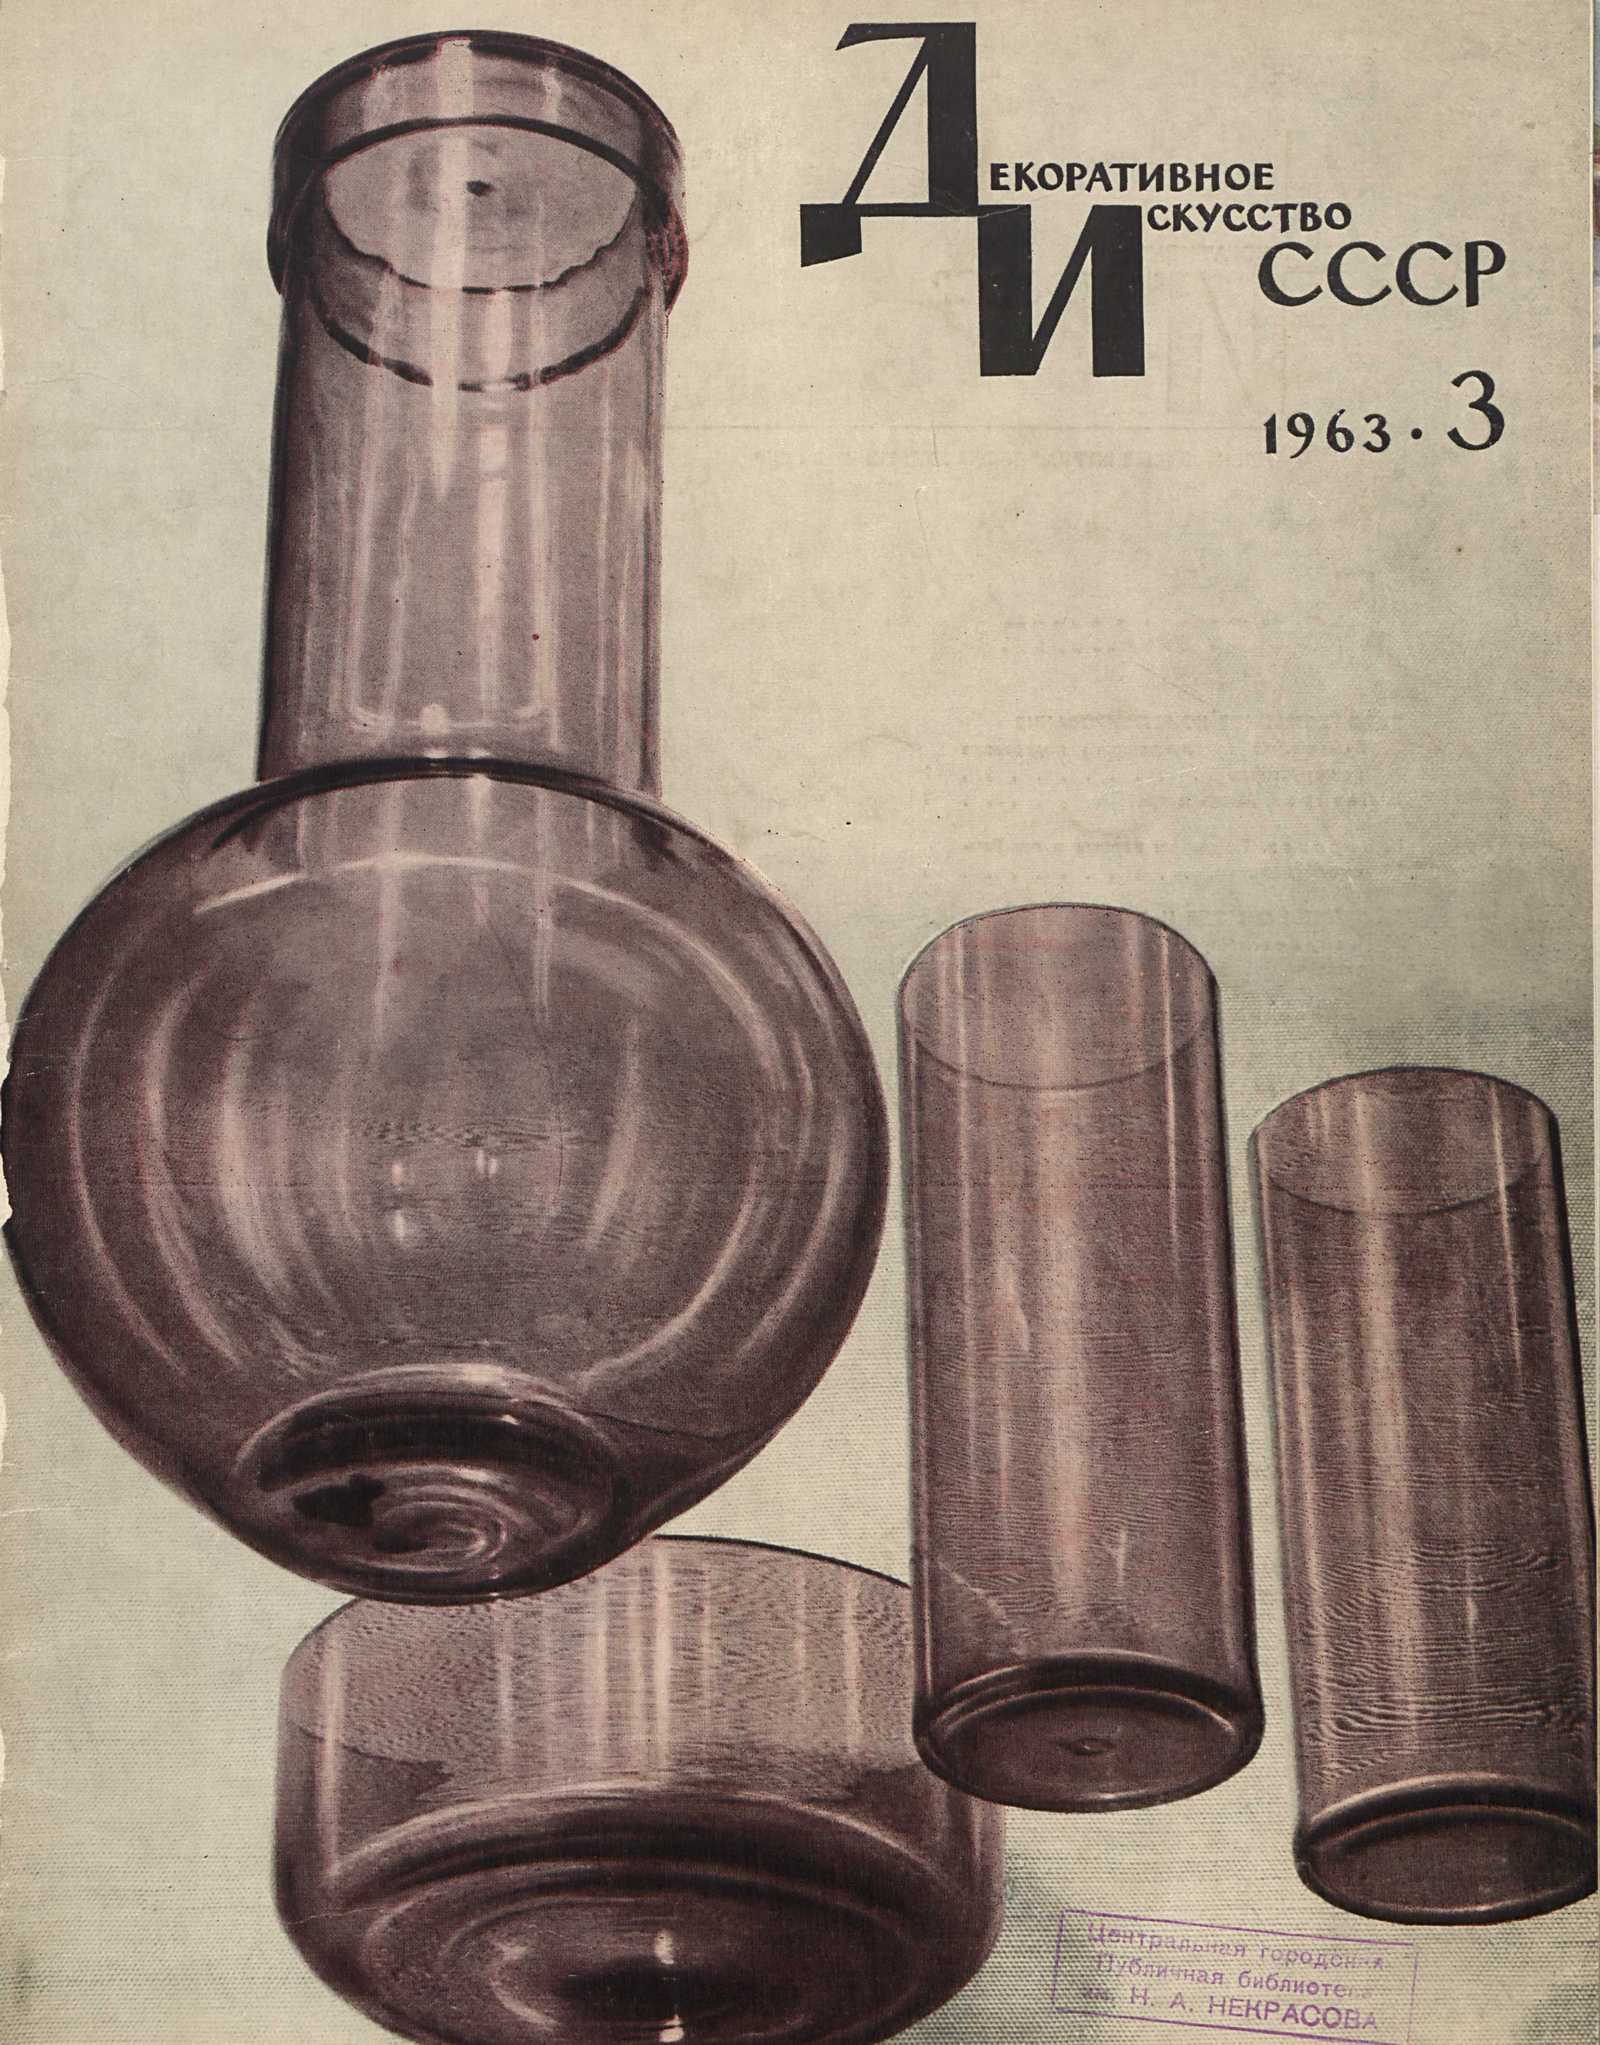 Декоративное искусство СССР 1963. № 3